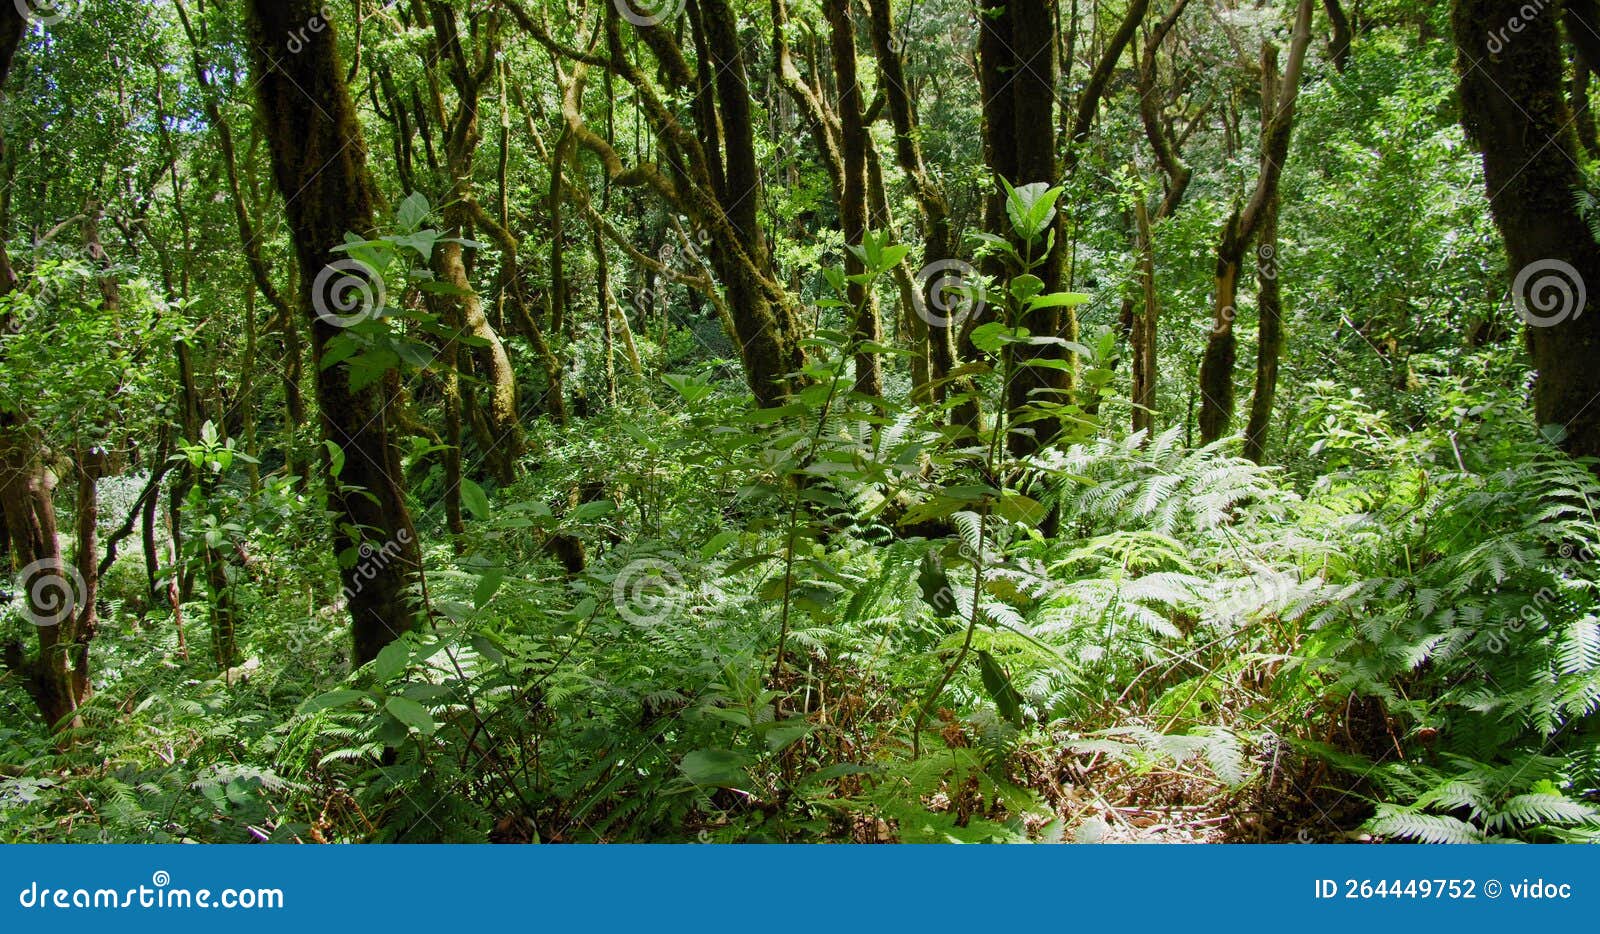 la ensillada, cabeza de tejo, walking through bosque encantado in anaga forest on tenerife, canary islands, spain